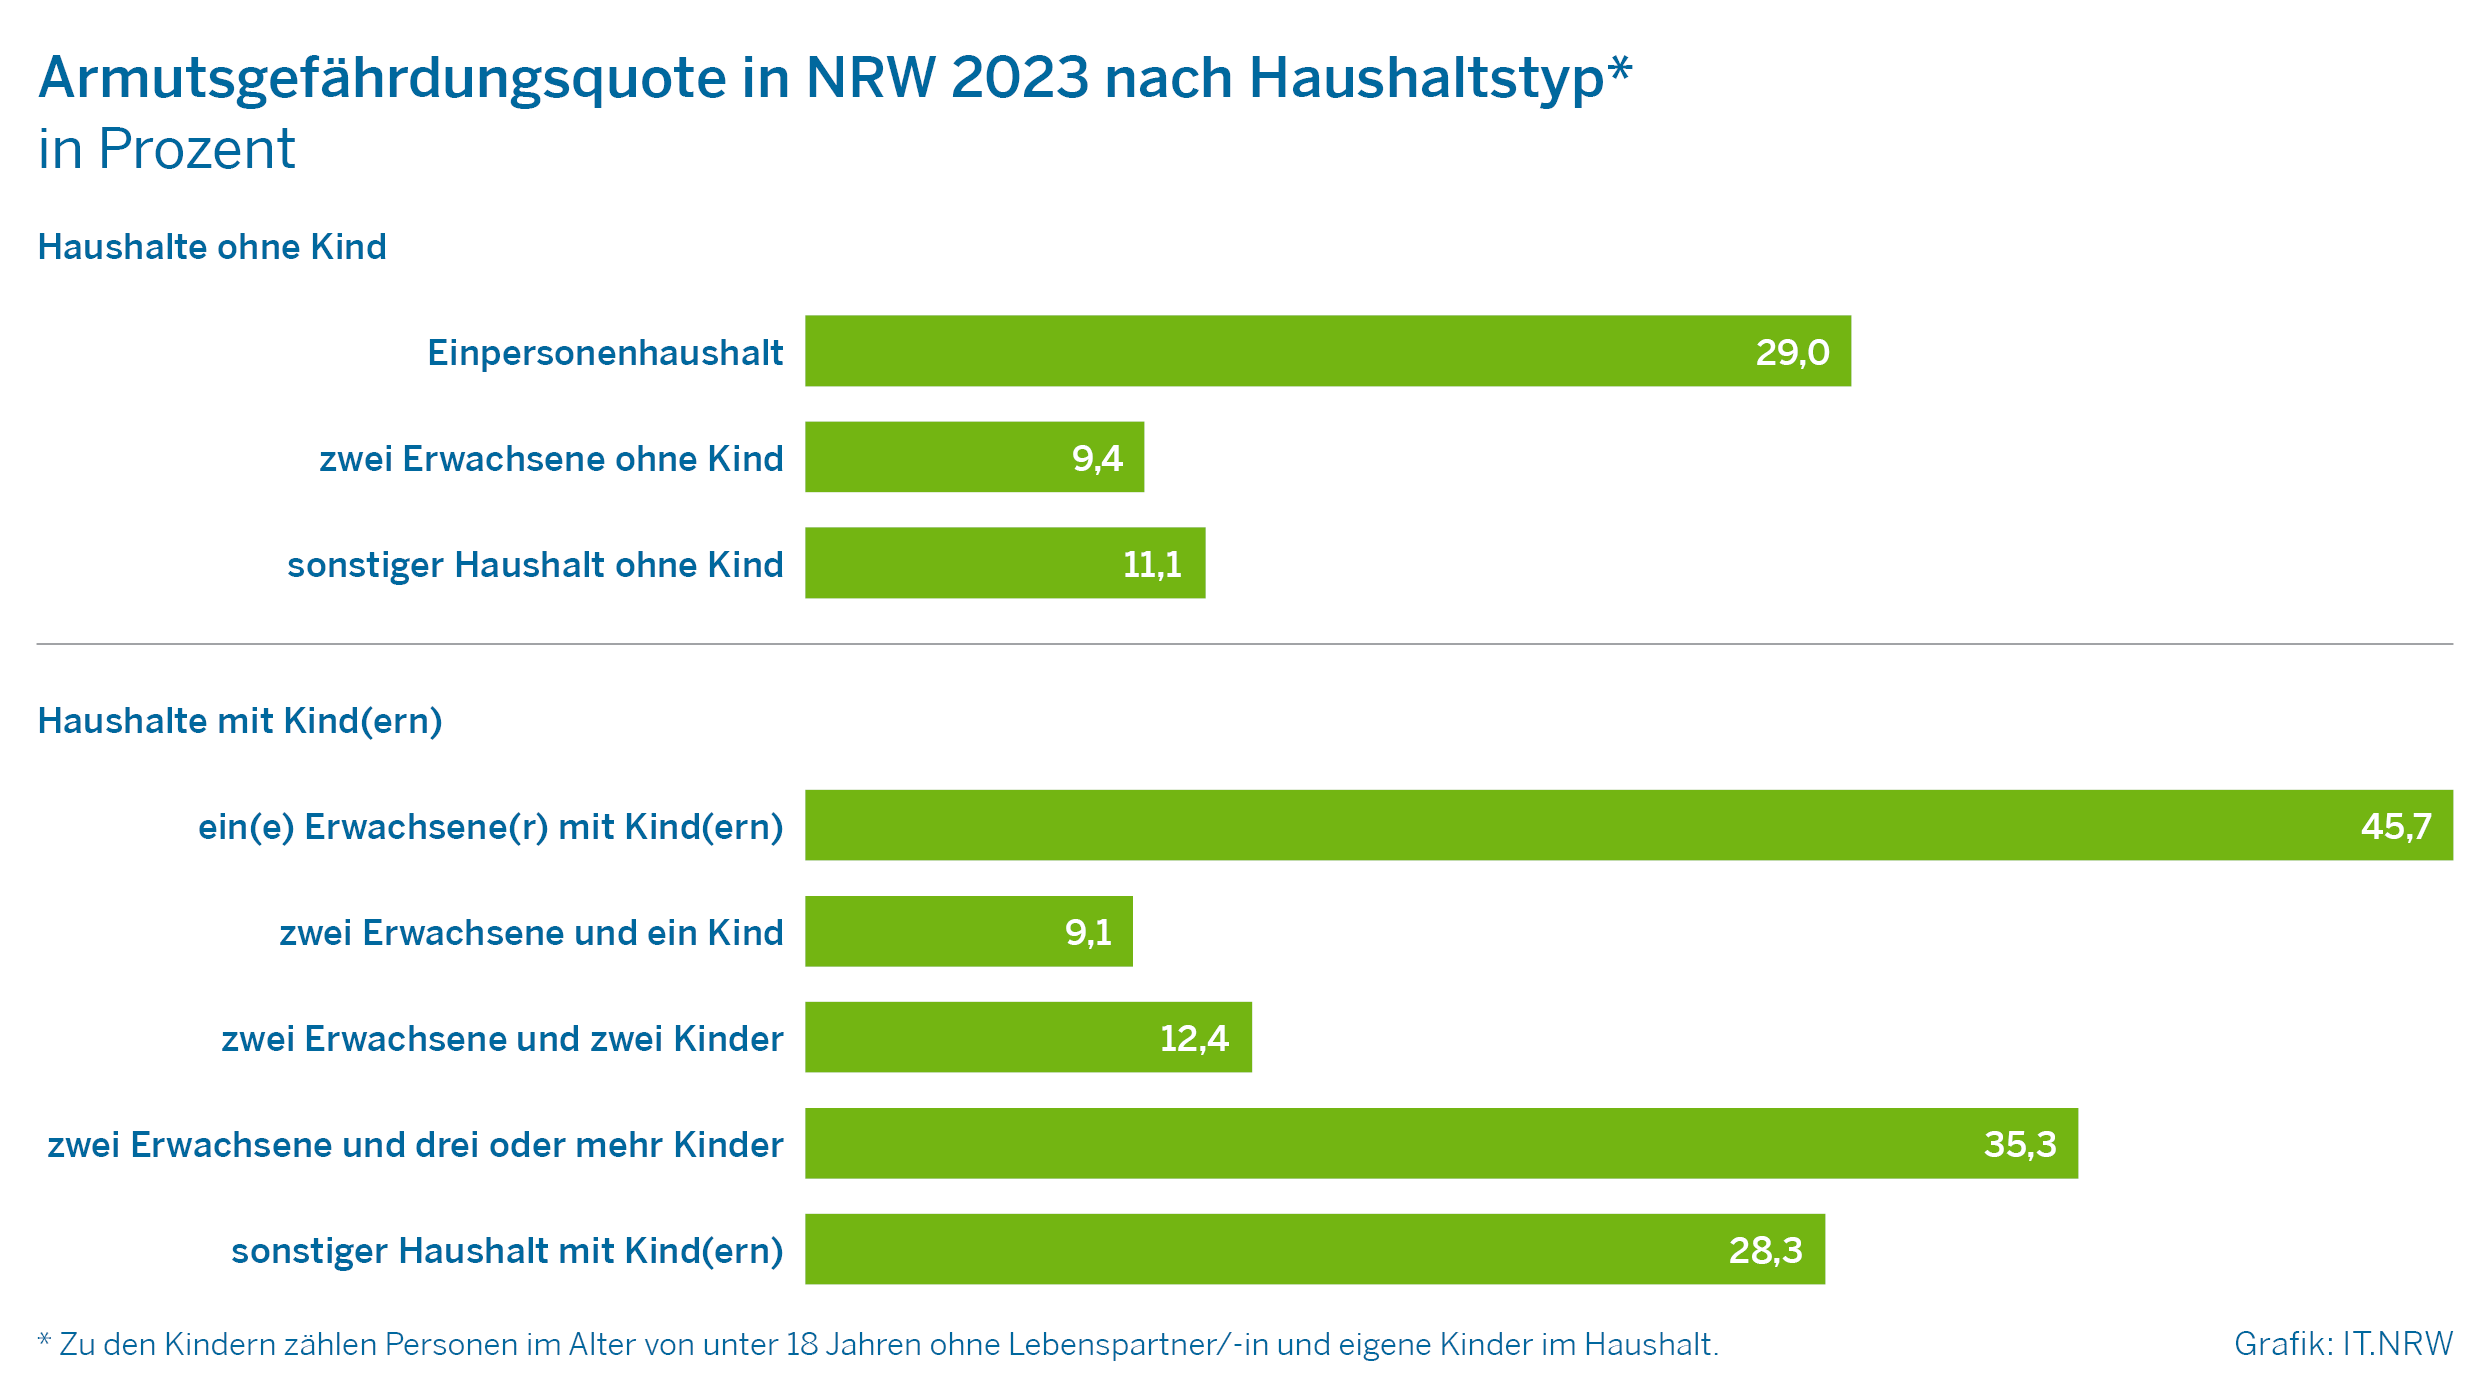 Armutsgefährdungsquote in NRW 2023 nach Haushalt in Prozent - dargestellt in einer Tabelle mit Balkendiagramm